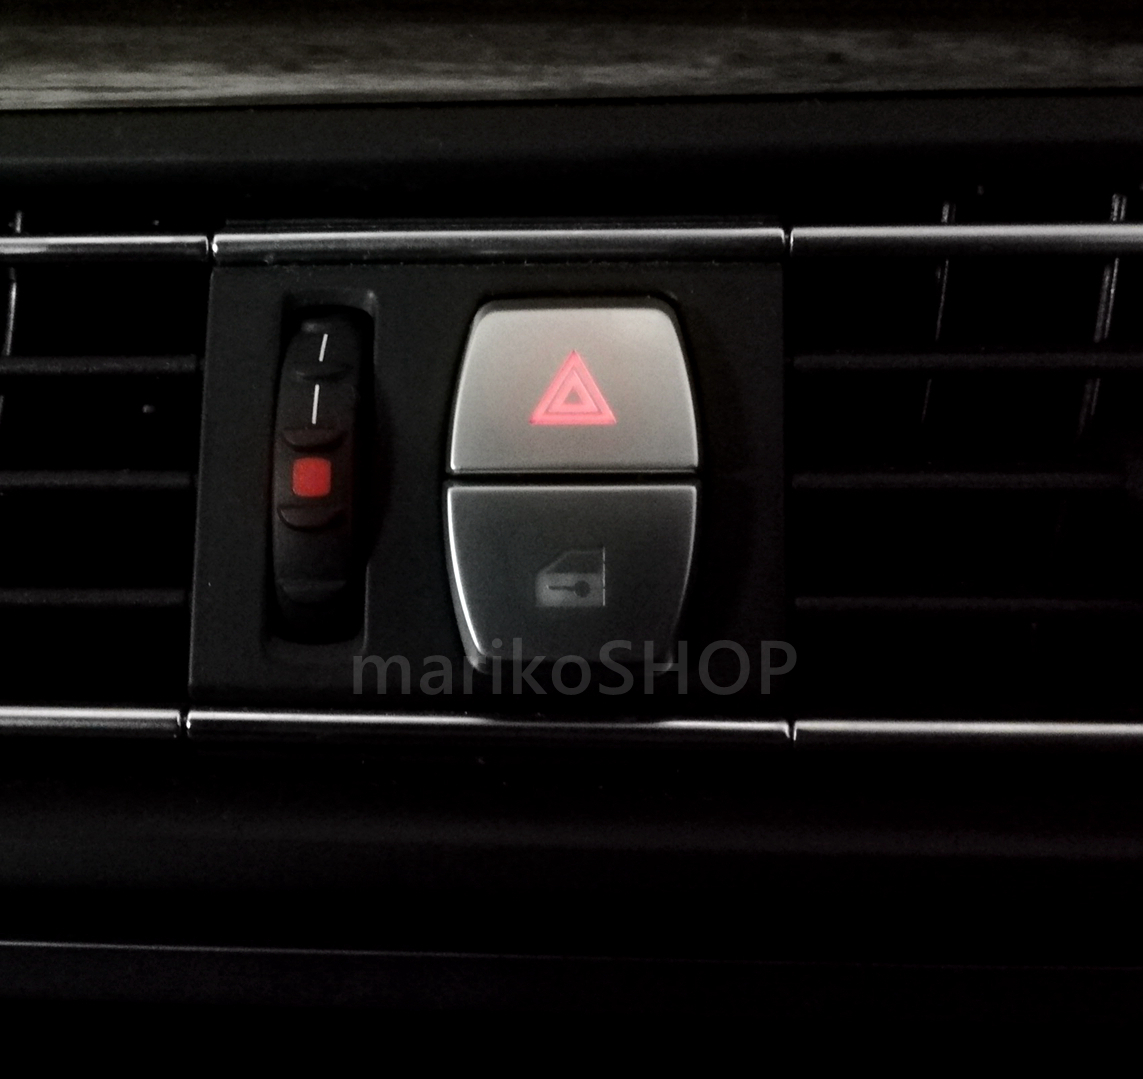 新品即納 BMW ハザード ドアロック スイッチ ボタン カバー グッズ 2個セット 内装 カスタム パーツ F10 F11 520 523d 530 540_画像4